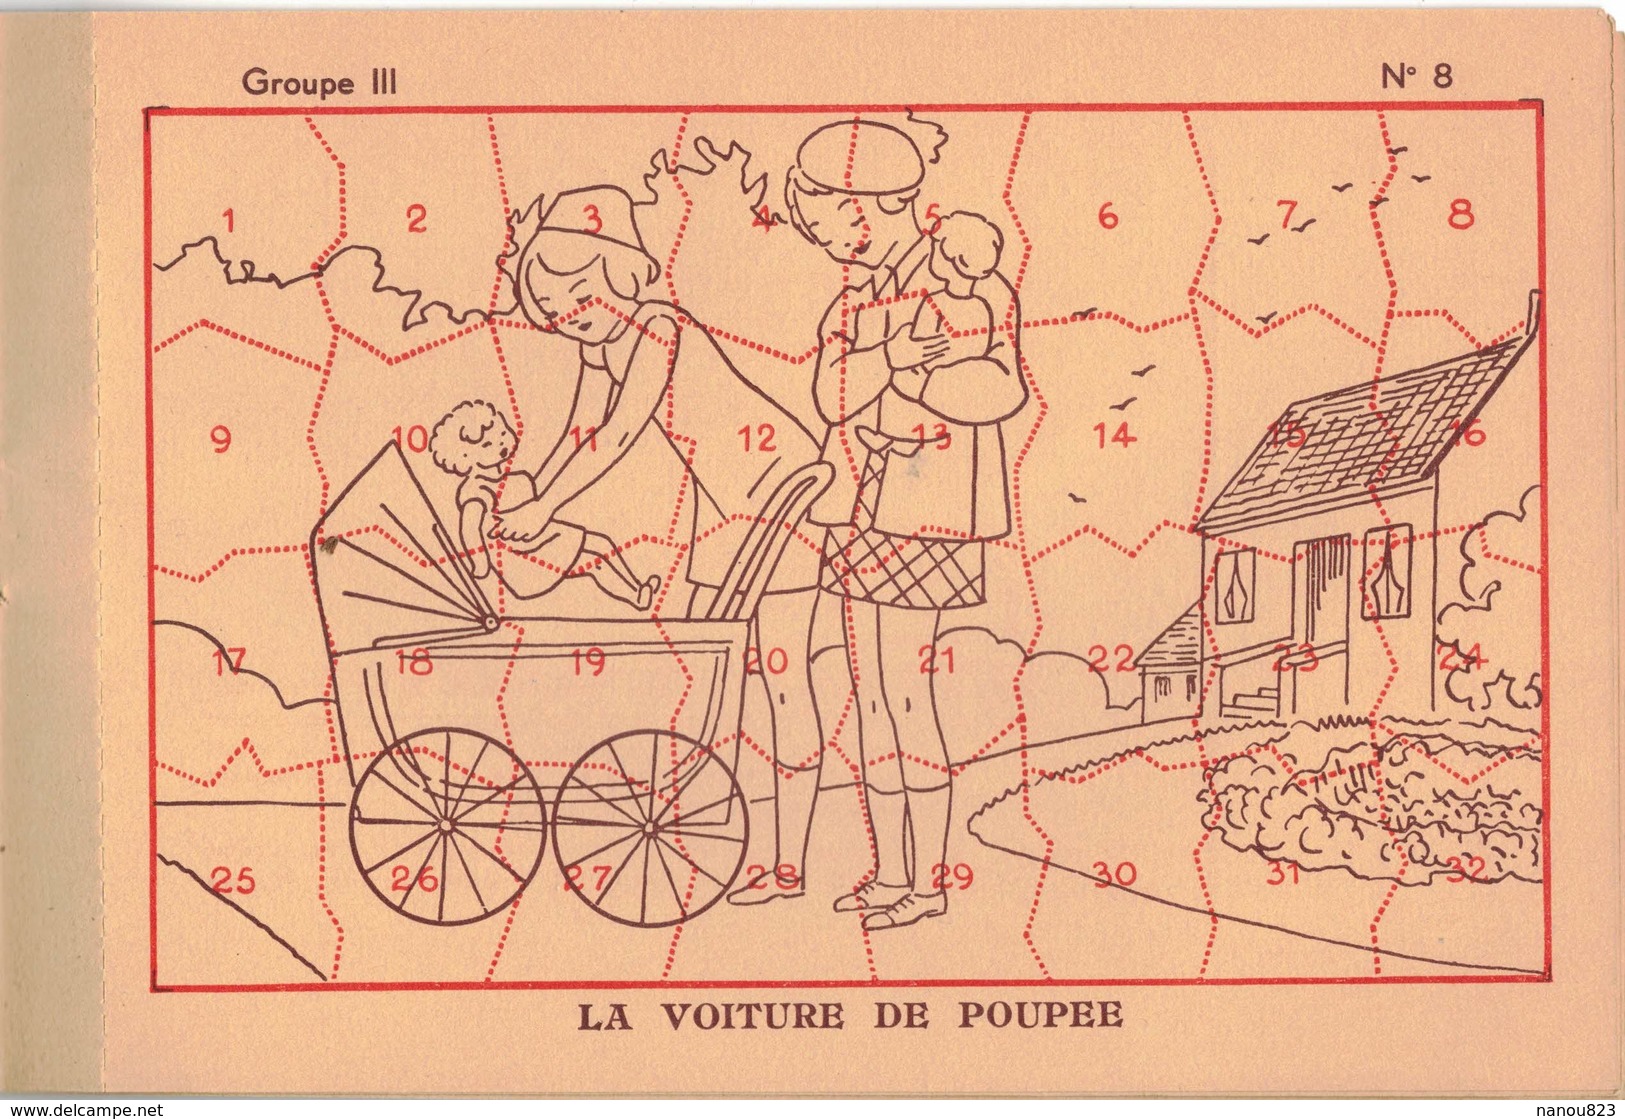 ANNEE 1937 - 1938 CHOCOLAT D'AIGUEBELLE : LES NOUVEAUX DECOUPAGES 2e Série D 10 PLANCHES COMPLET